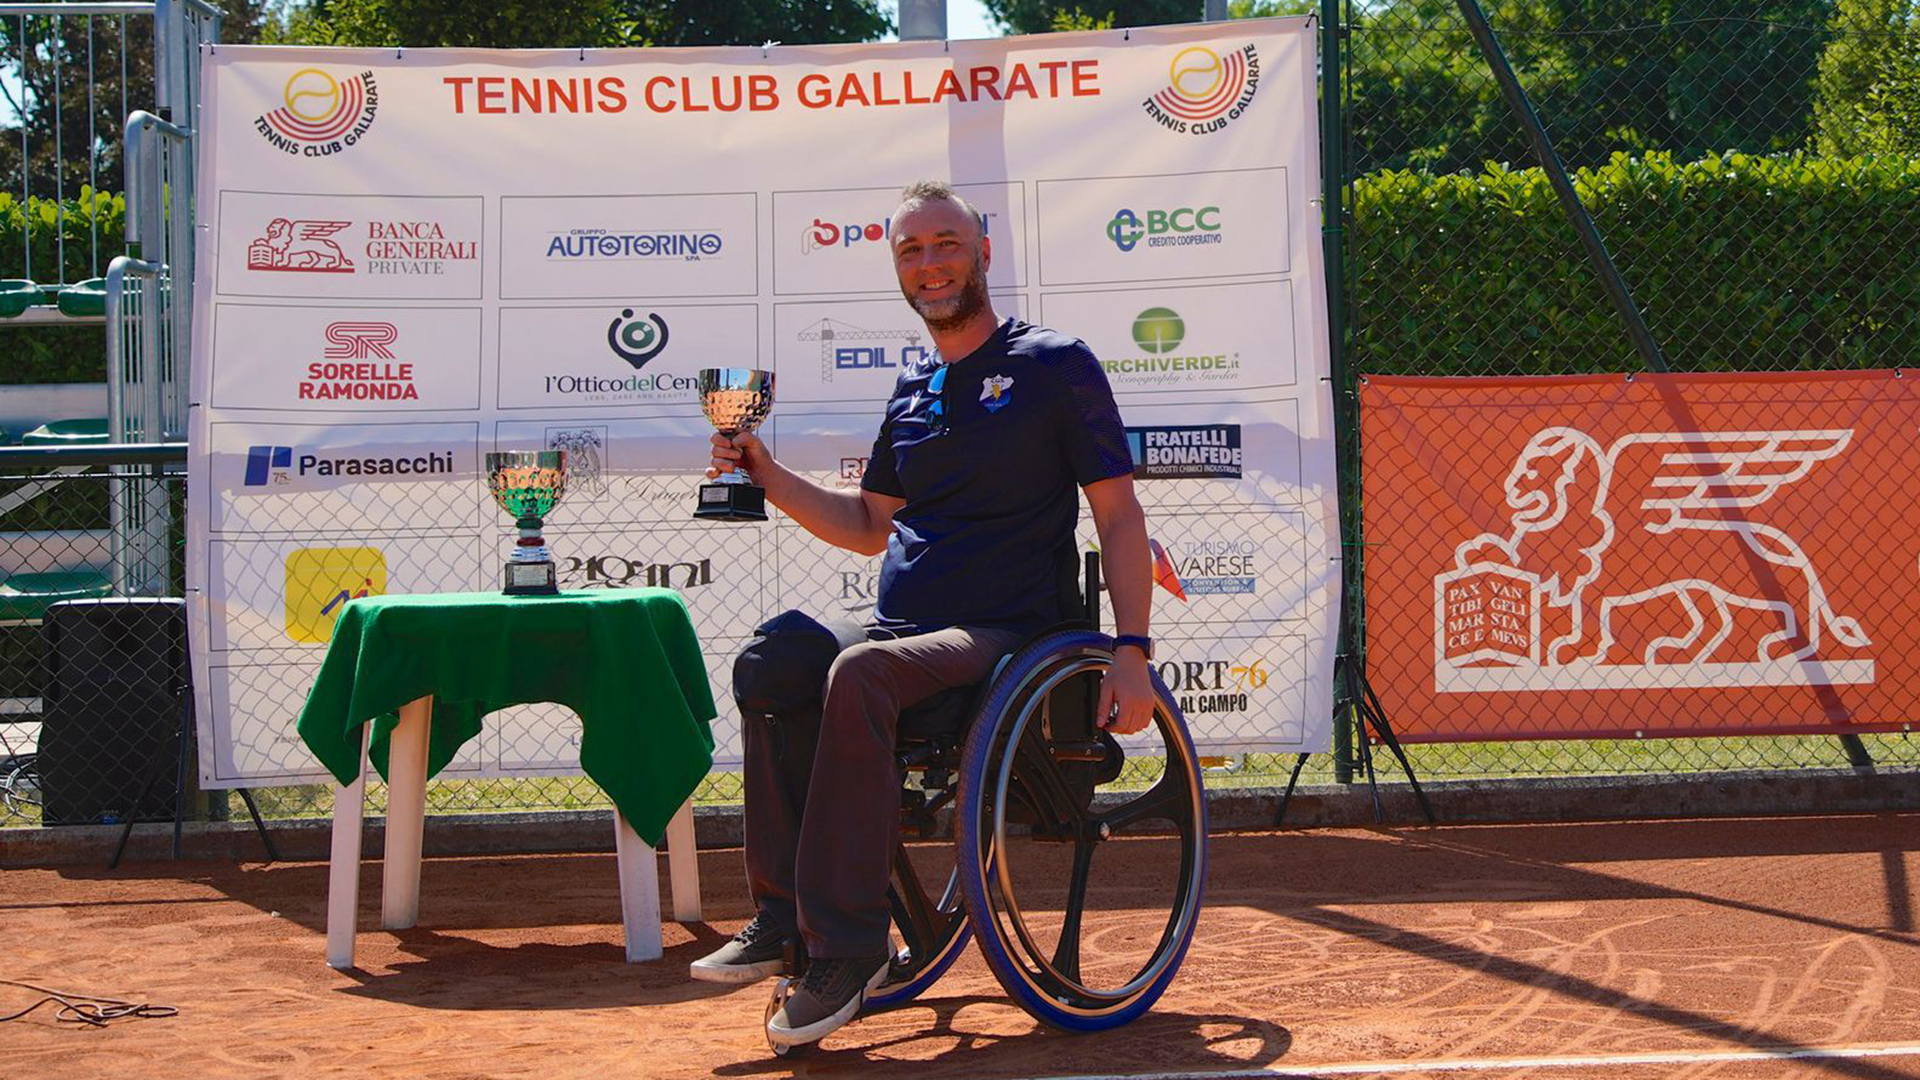 Foto di Luca Paiardi che mostra un trofeo sul campo da tennis in terra rossa